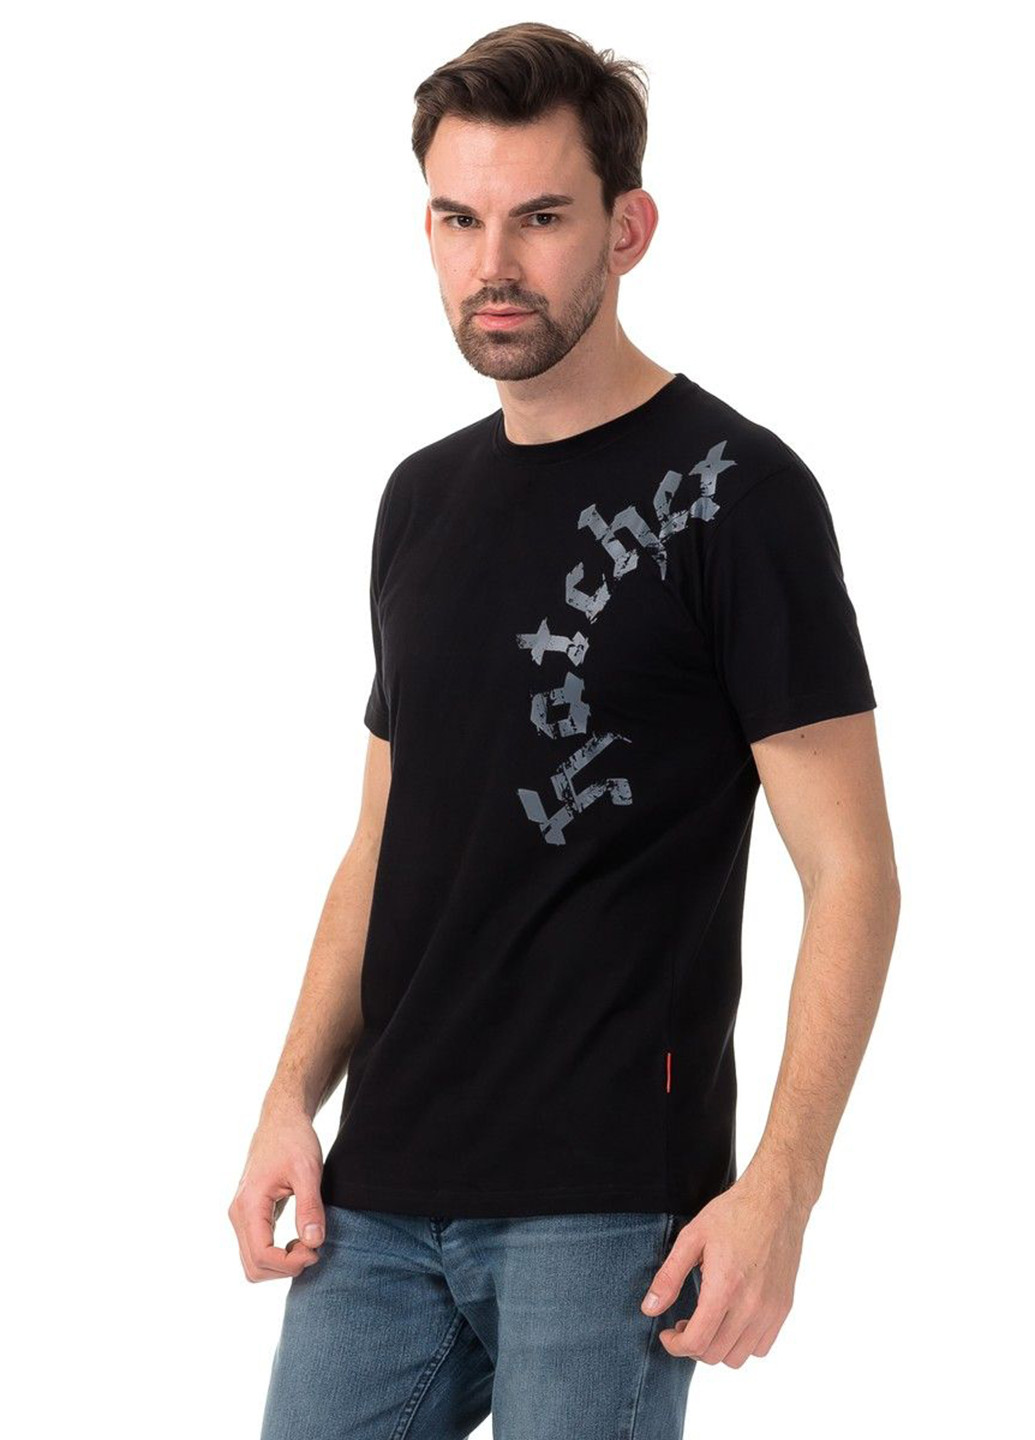 Черная футболка dobermans hatchet ts40bk Dobermans Aggressive